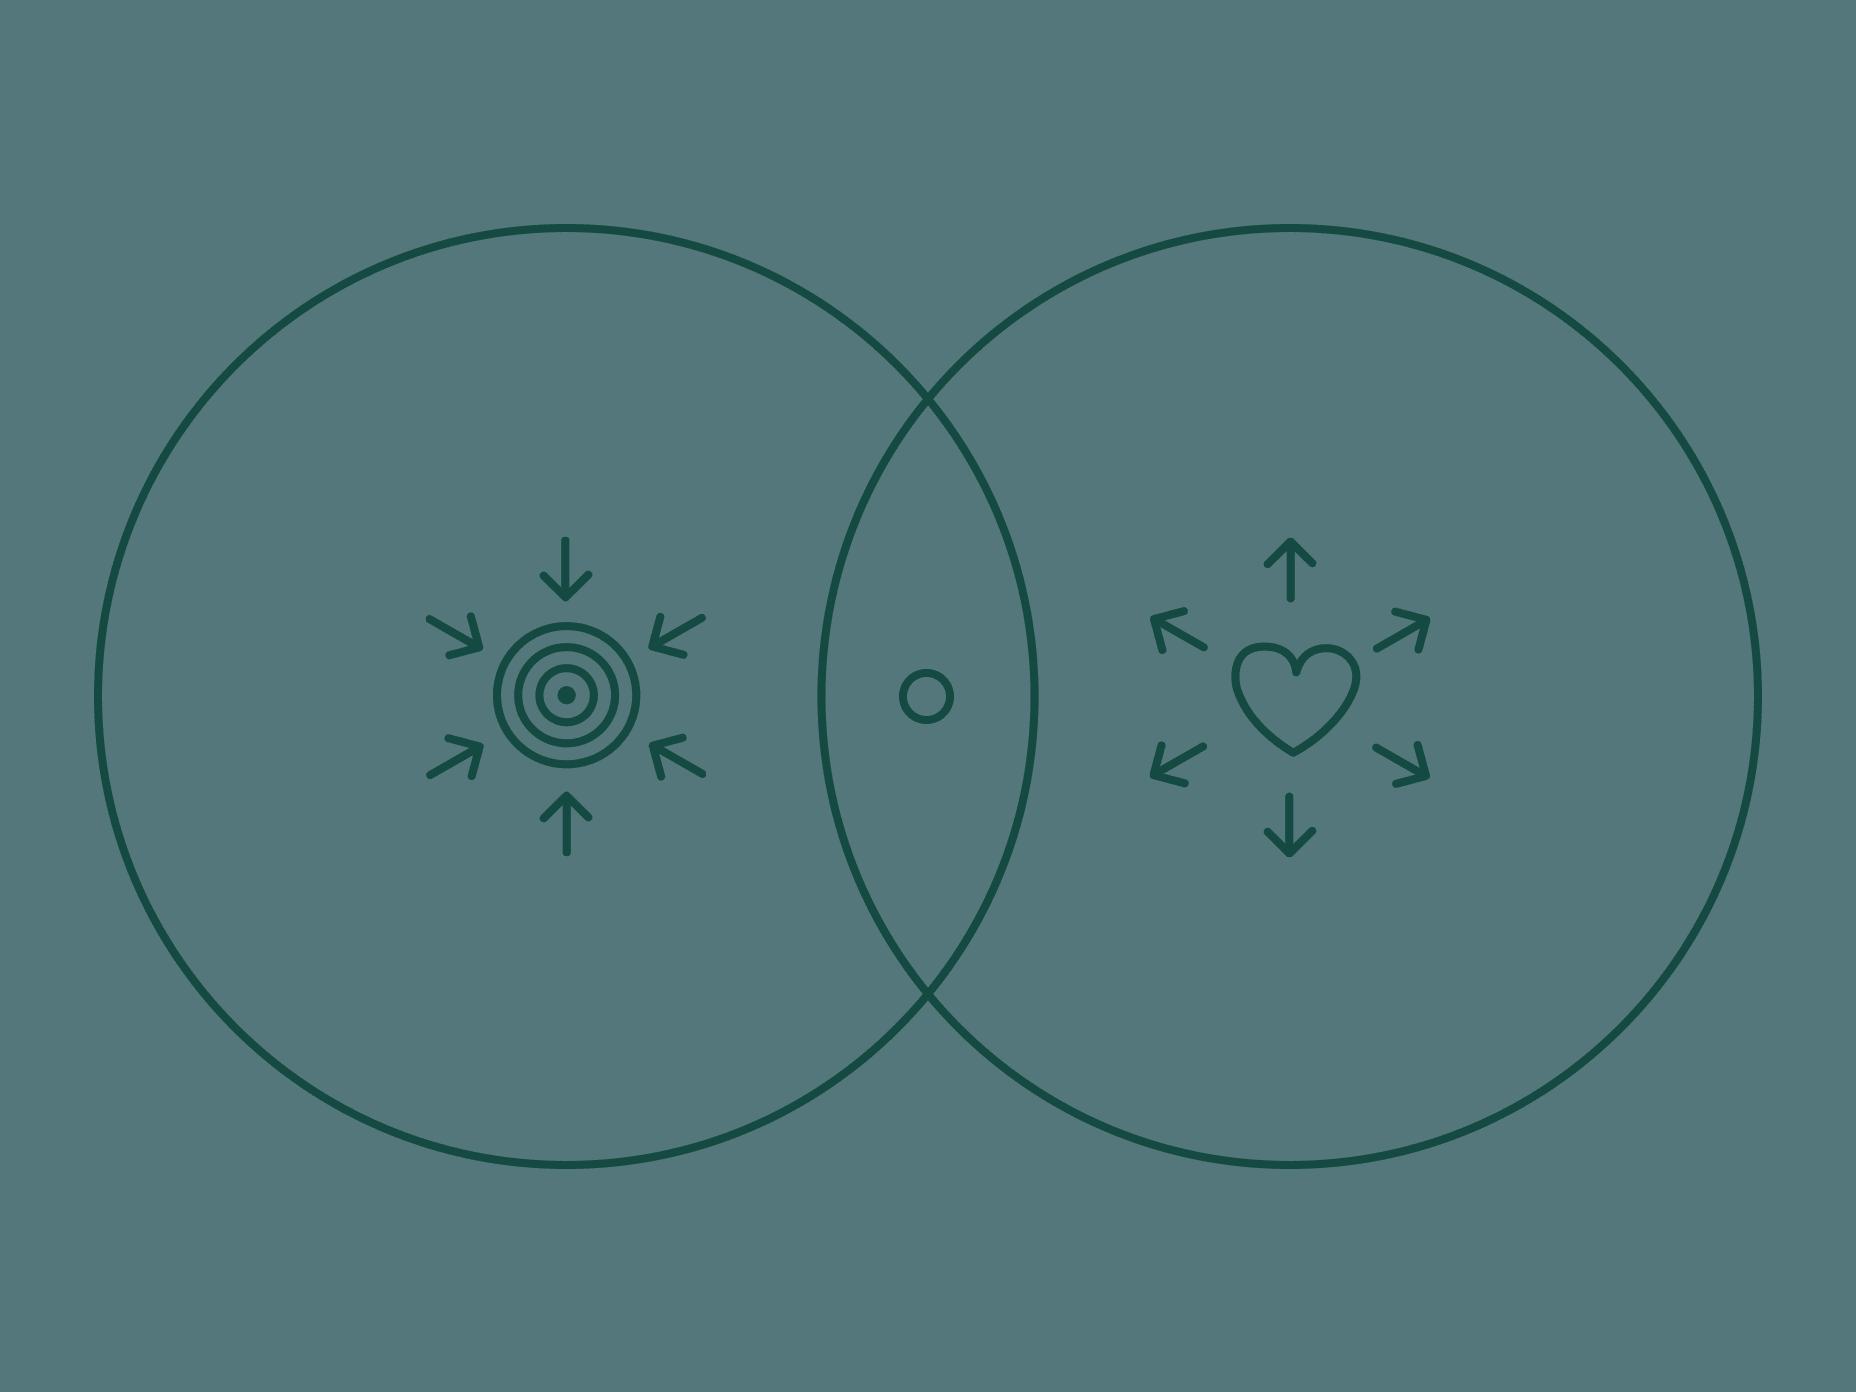 Animation einer linearen Illustration von zwei Kreisen mit Symbolen für Markenkern und Kundenbedürfnis, die sich treffen – in der Mitte erscheint ein Diamant © good matters